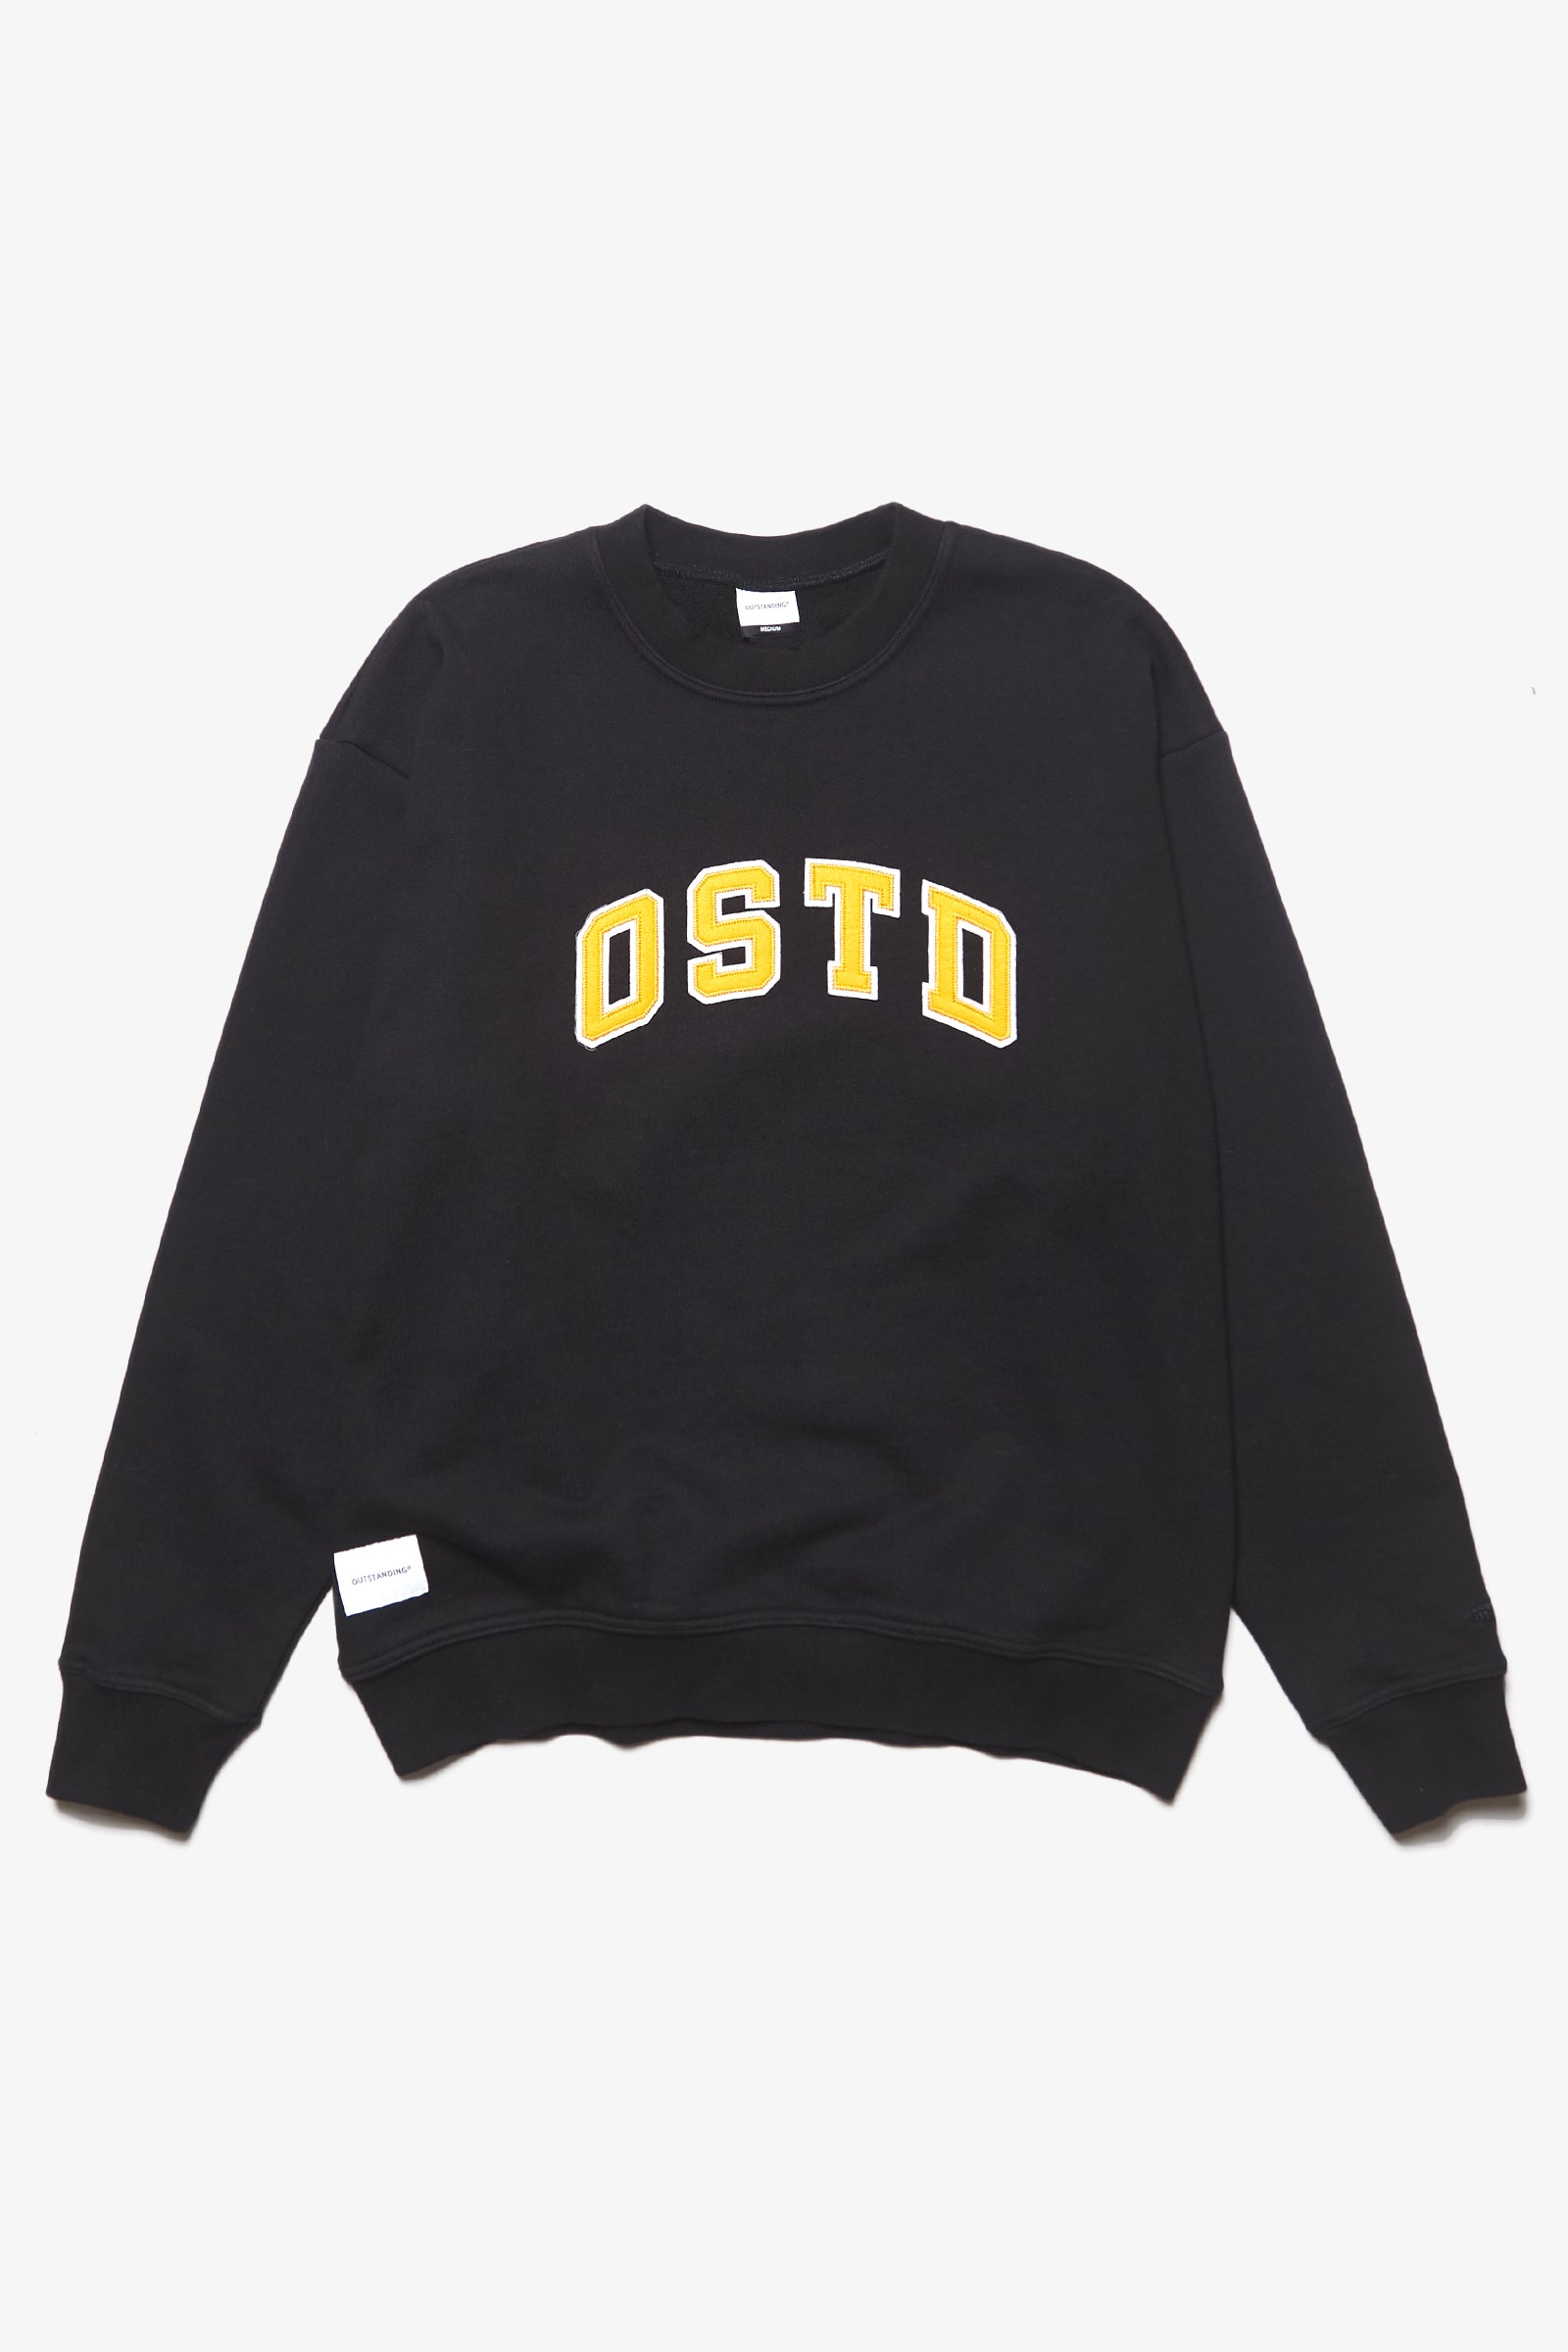 Outstanding & Co. - OSTD Collegiate Sweatshirt - Black